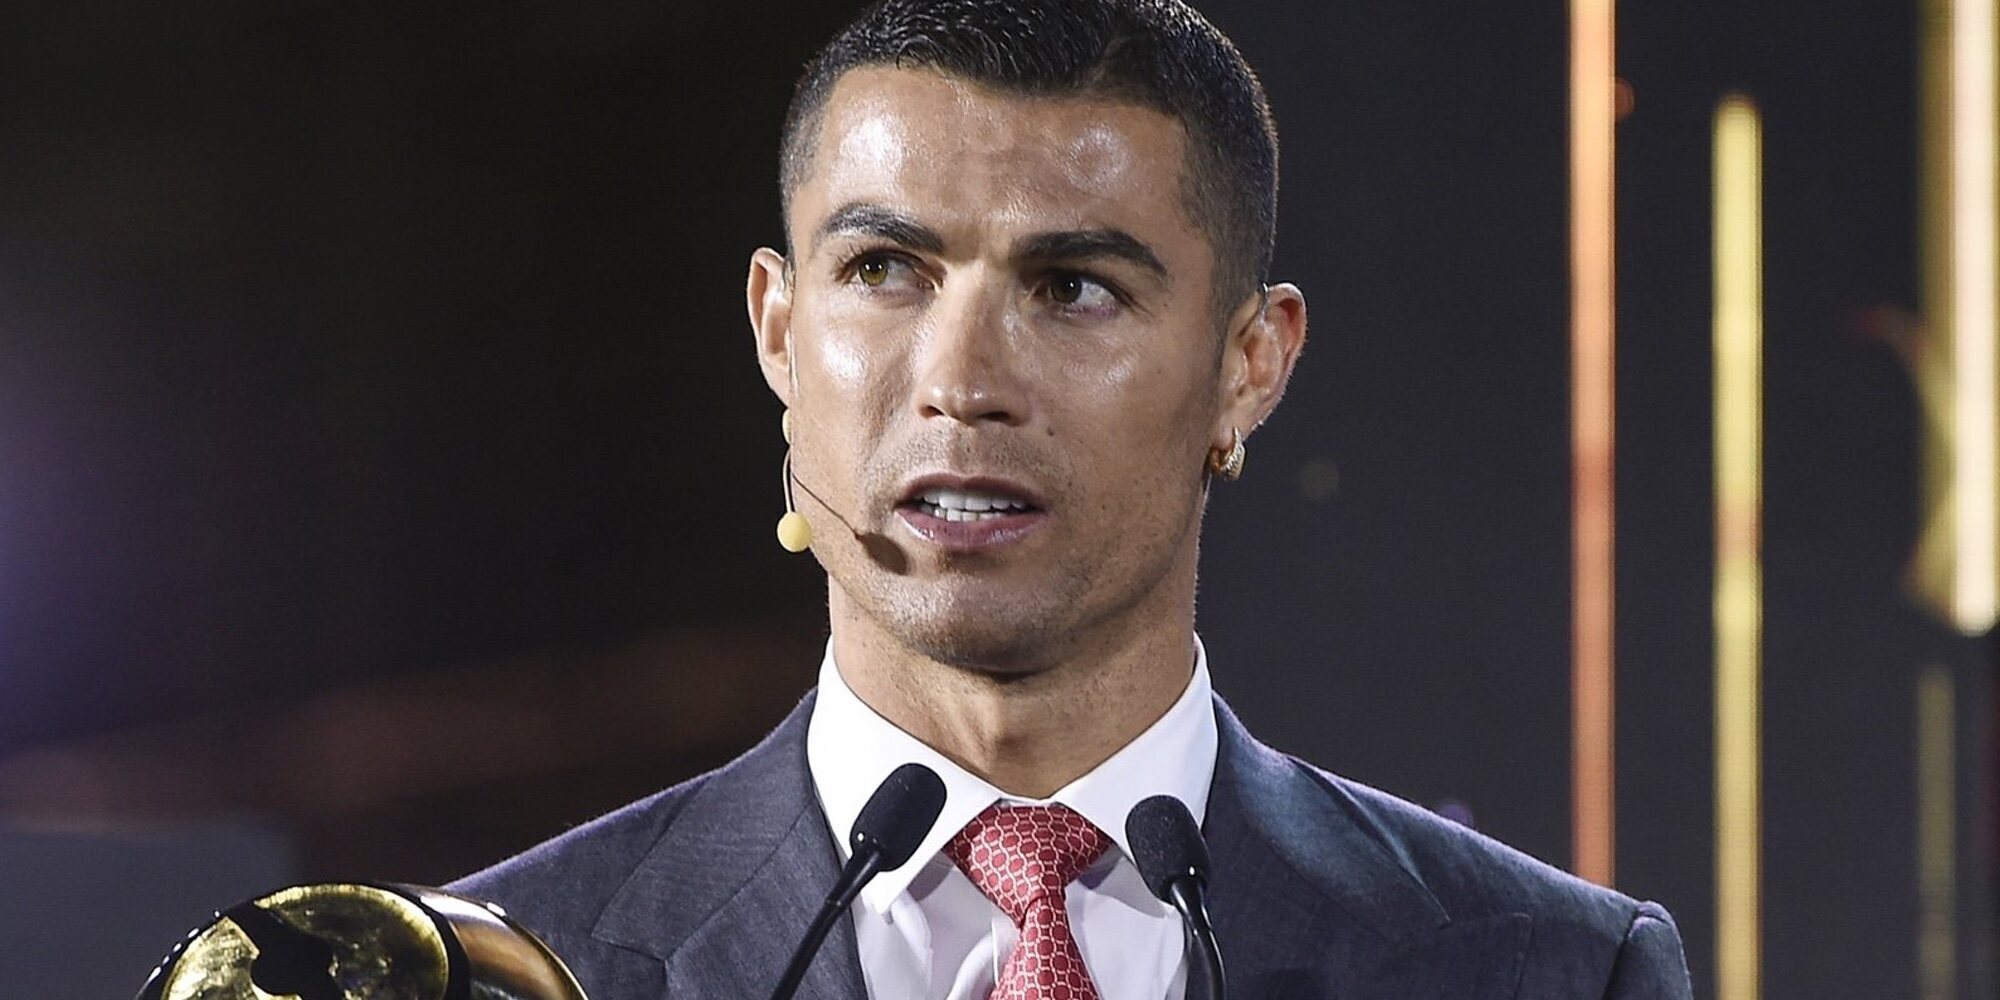 El polémico gesto de Cristiano Ronaldo en la Eurocopa contra Coca-Cola: la retira porque detesta las bebidas azucaradas